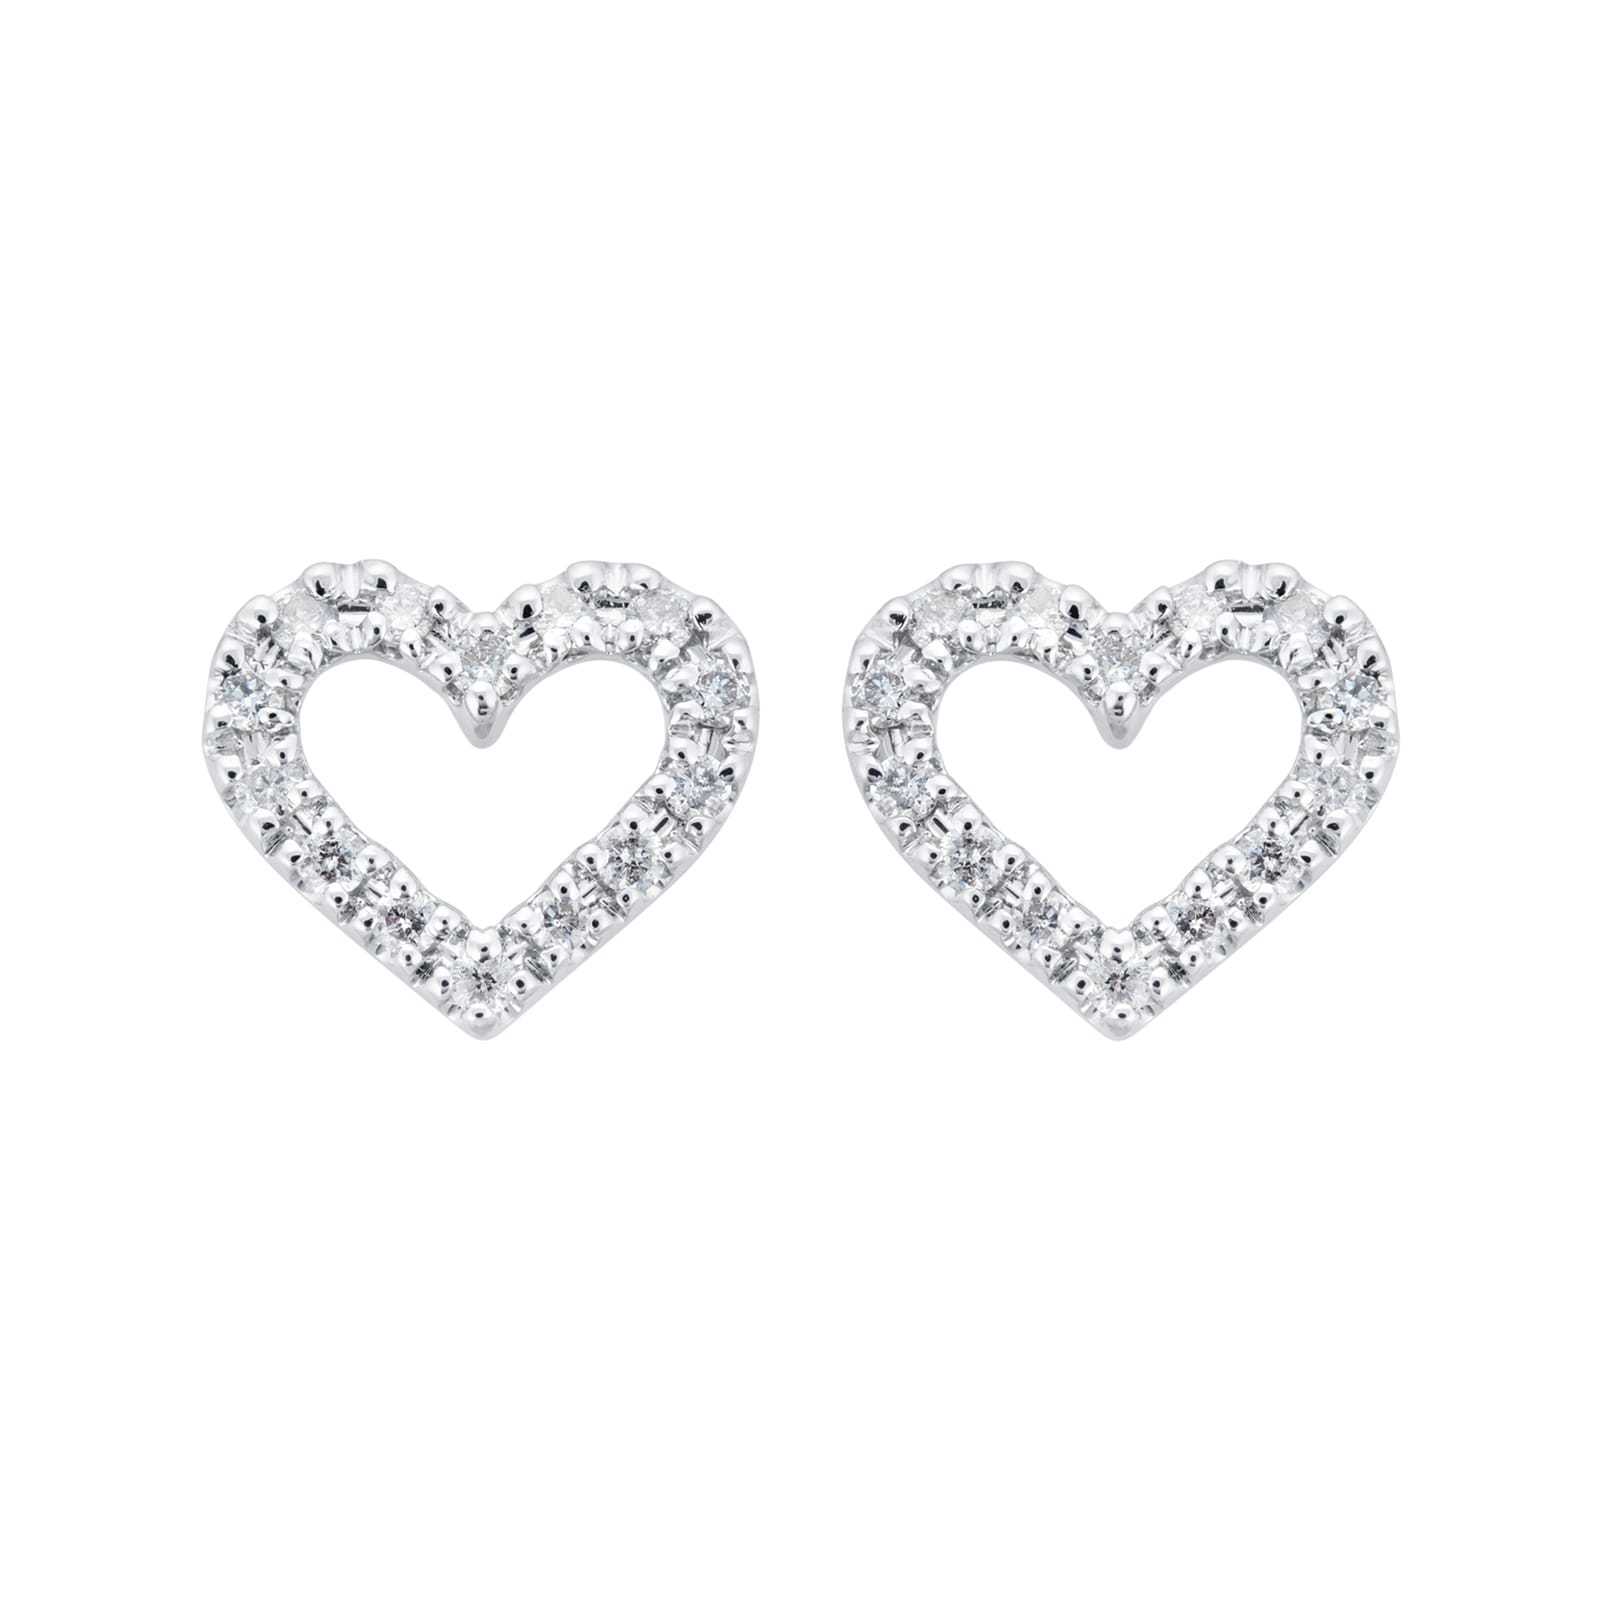 Gemstones Jewellery, Gemstone Rings, Necklaces, Bracelets & Earrings UK ...